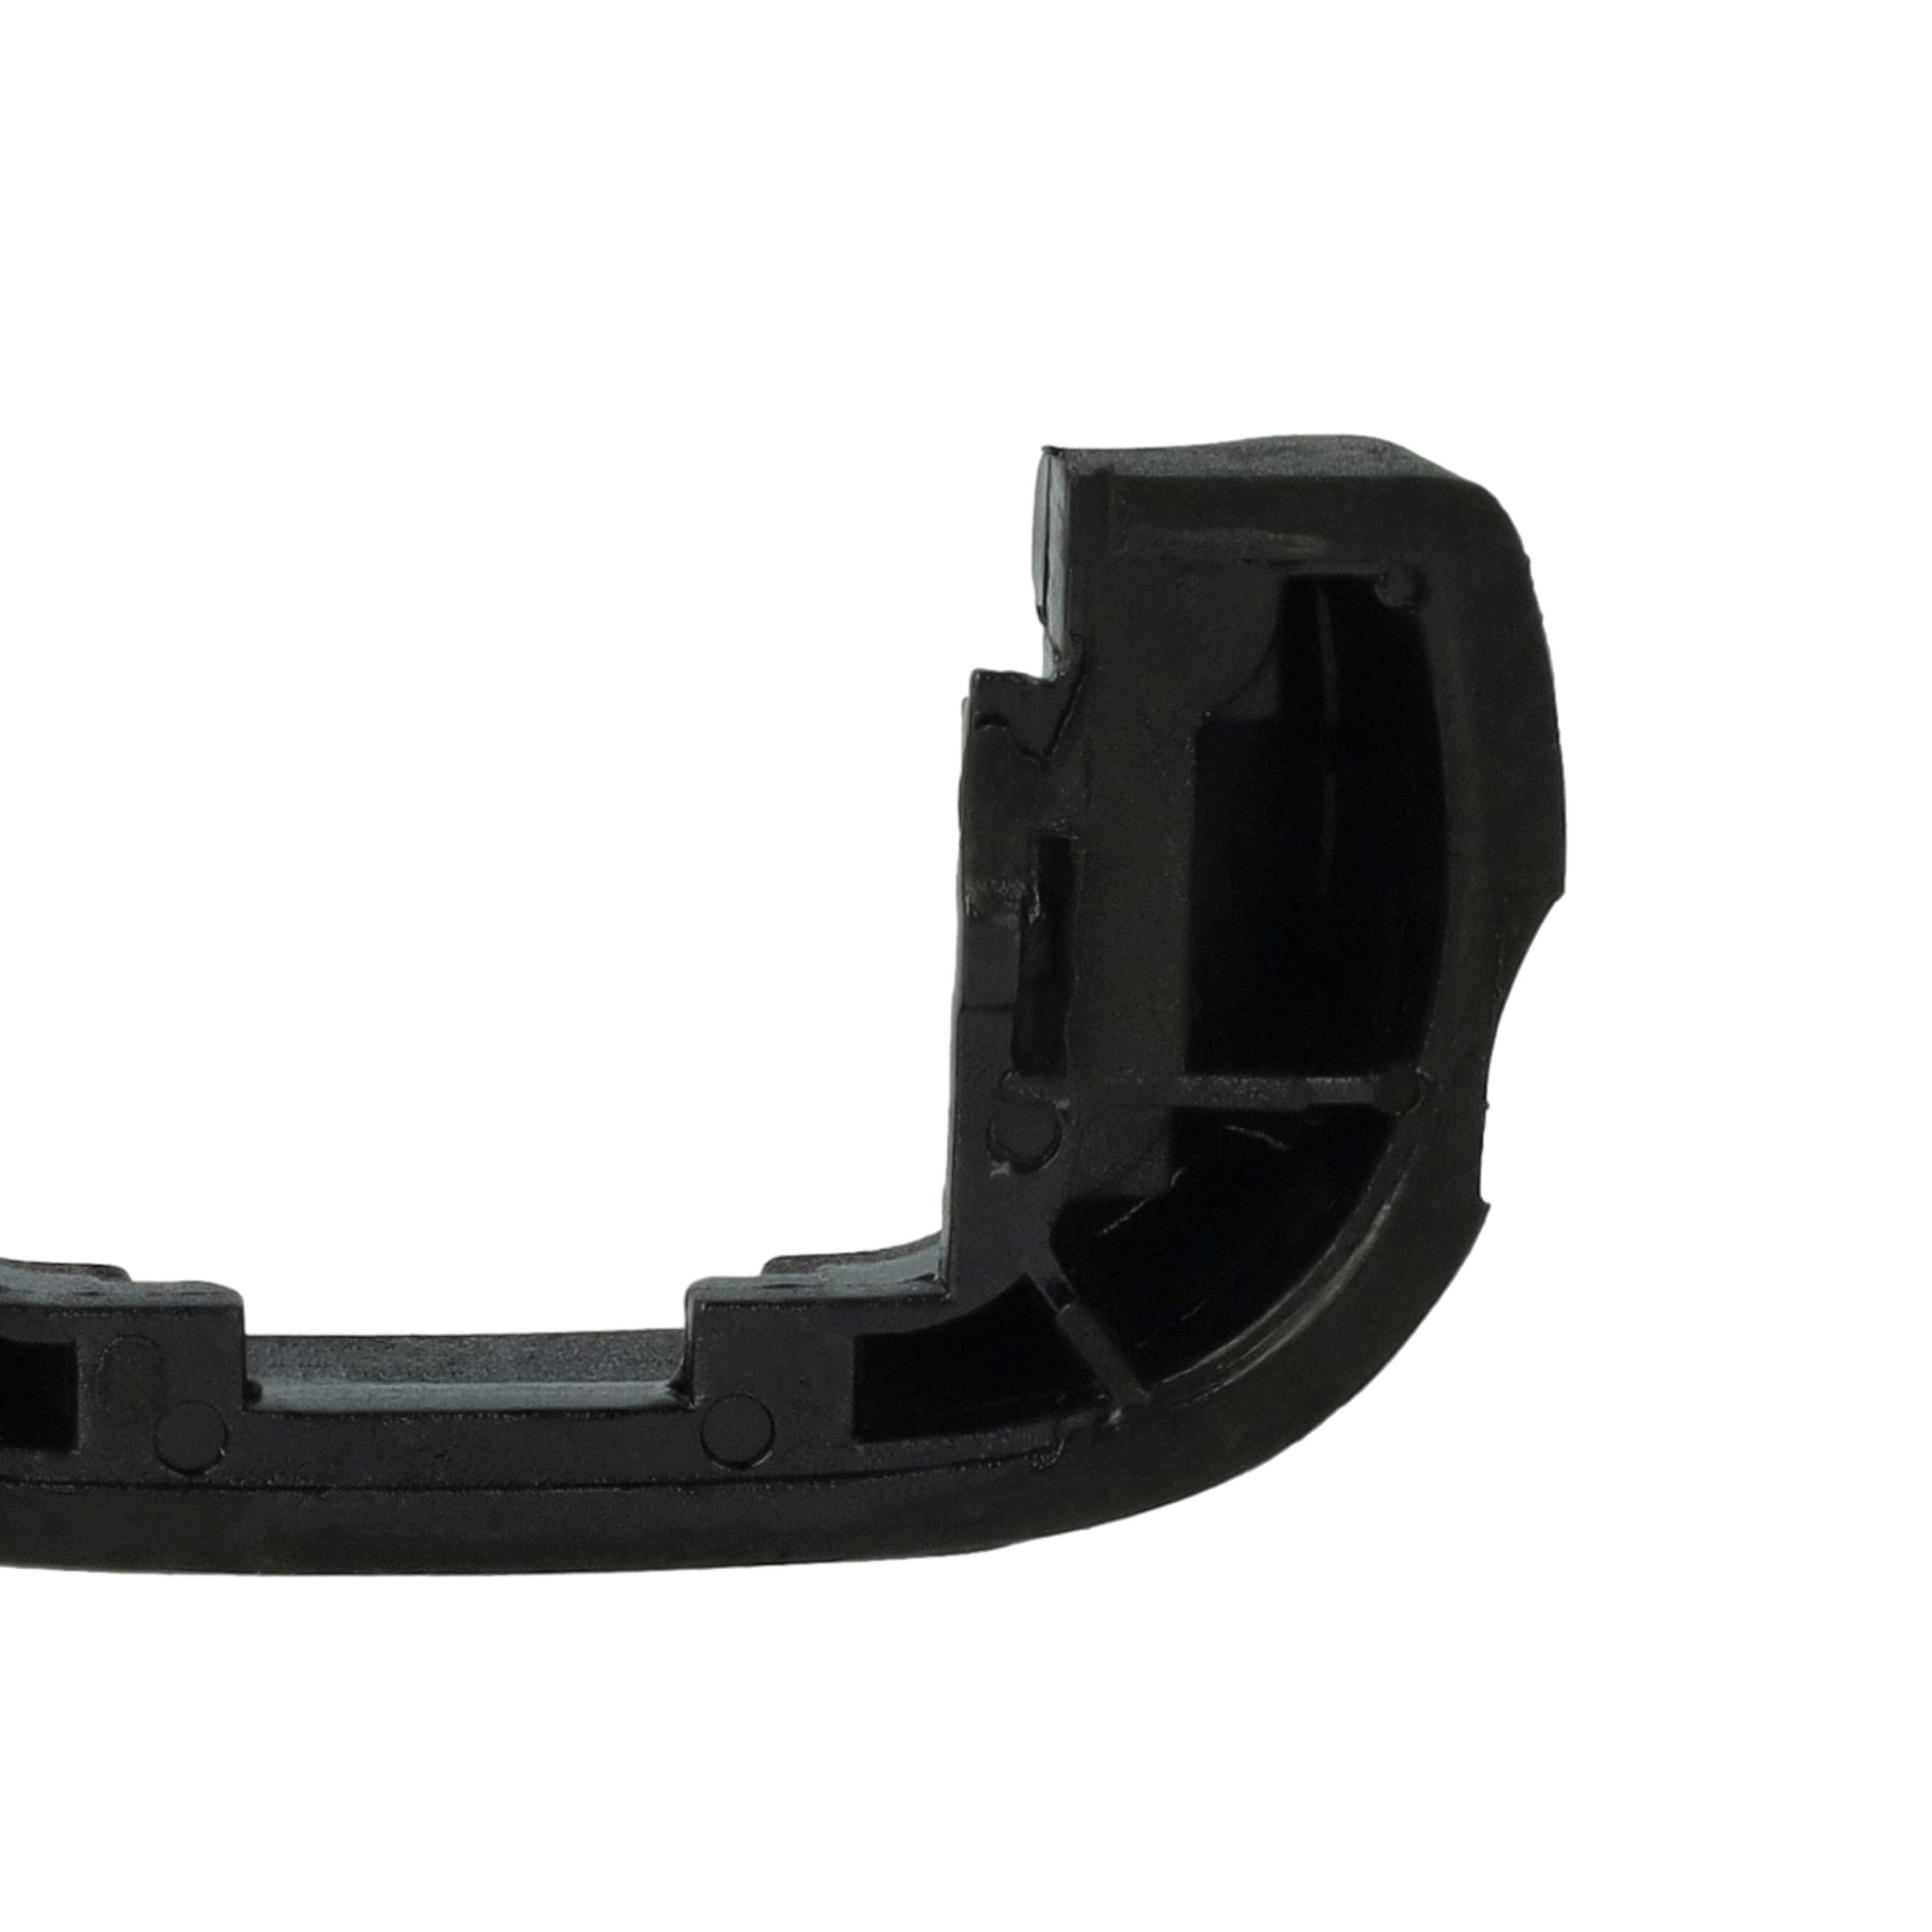 Augenmuschel Sucher als Ersatz für Sony FDA-EP12 für Sony A7 Mark II u.a., Kunststoff